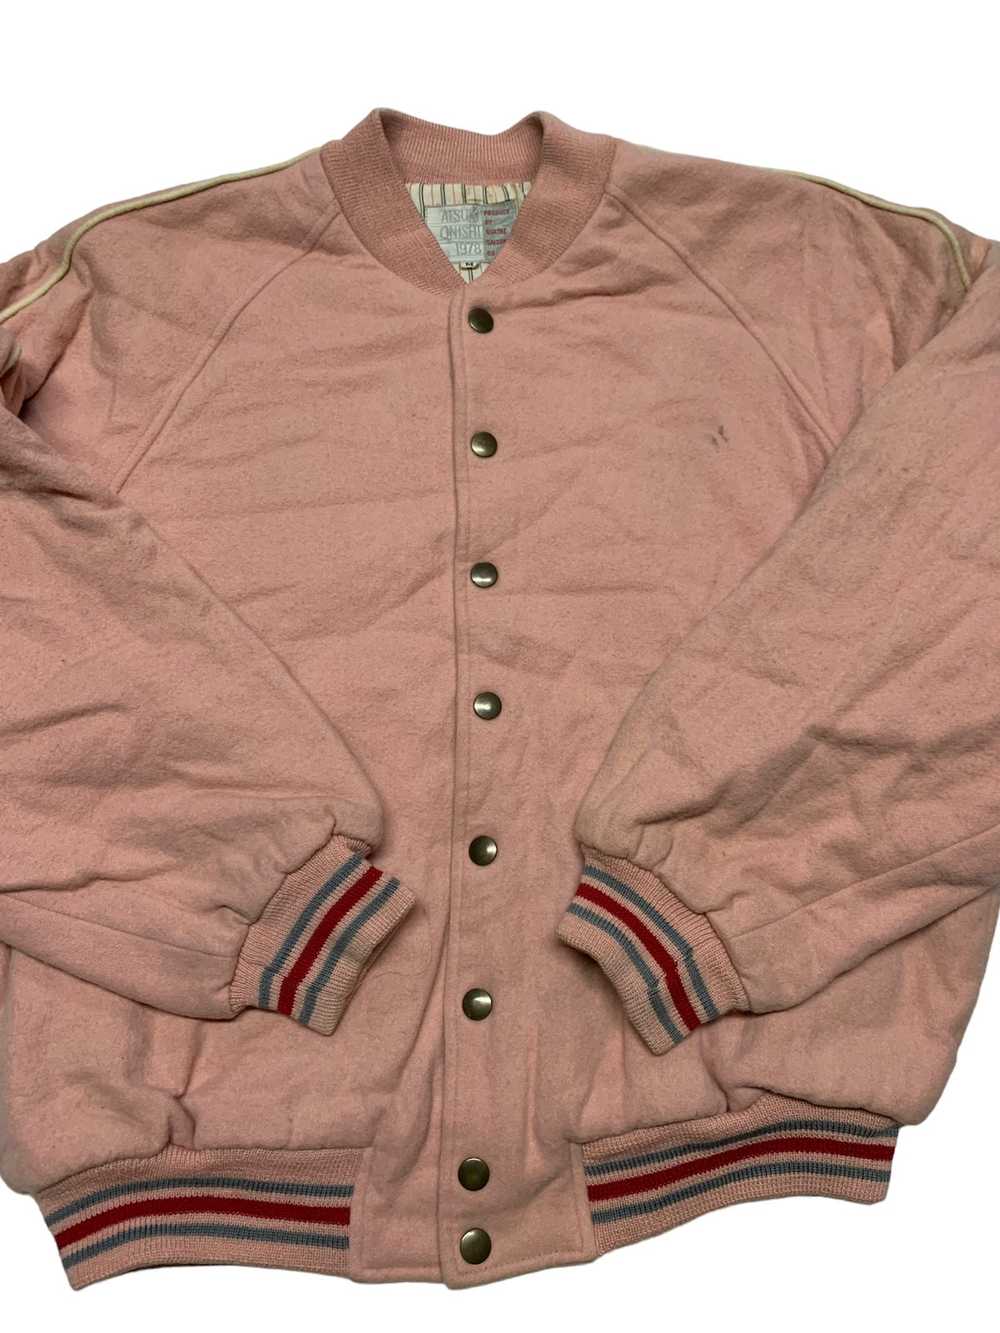 Varsity Jacket Atsuki onishi 1978 produce by quat… - image 5